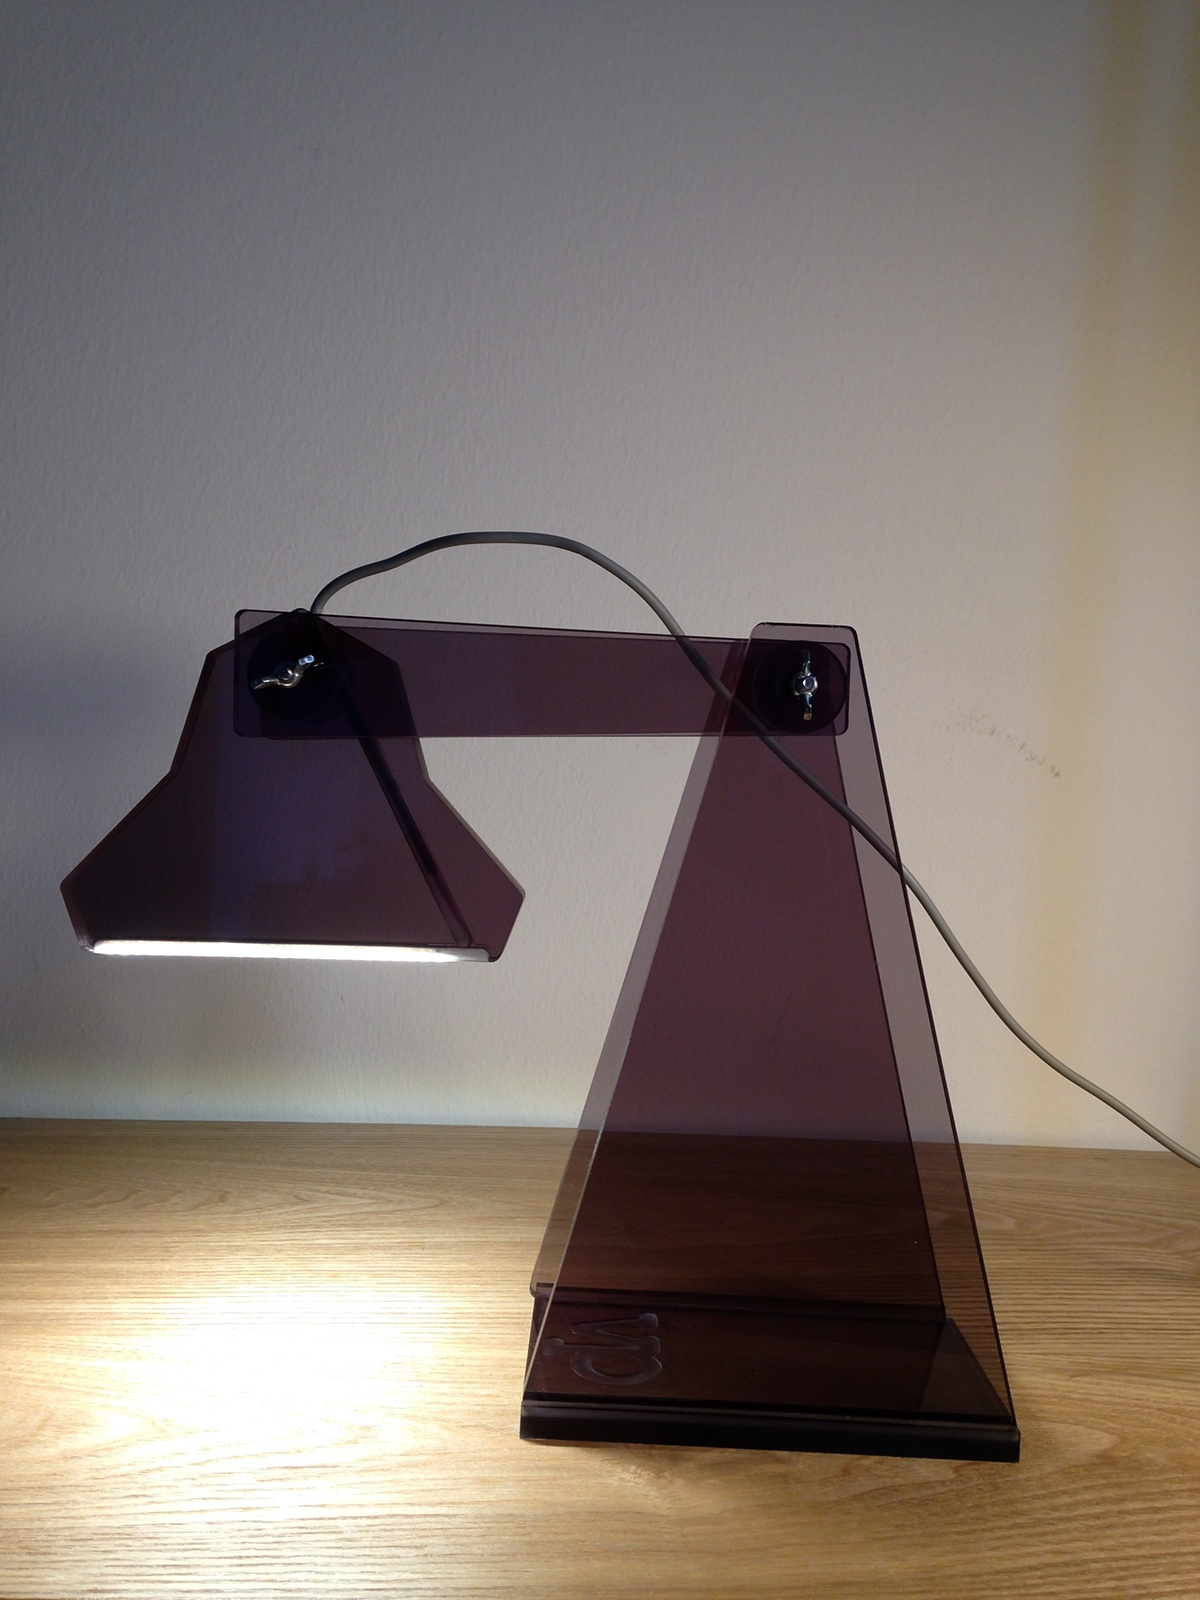 Lamp led cucu light table lamp layer Vergaplast come quando fuori design metacrylate metronomo trasparente